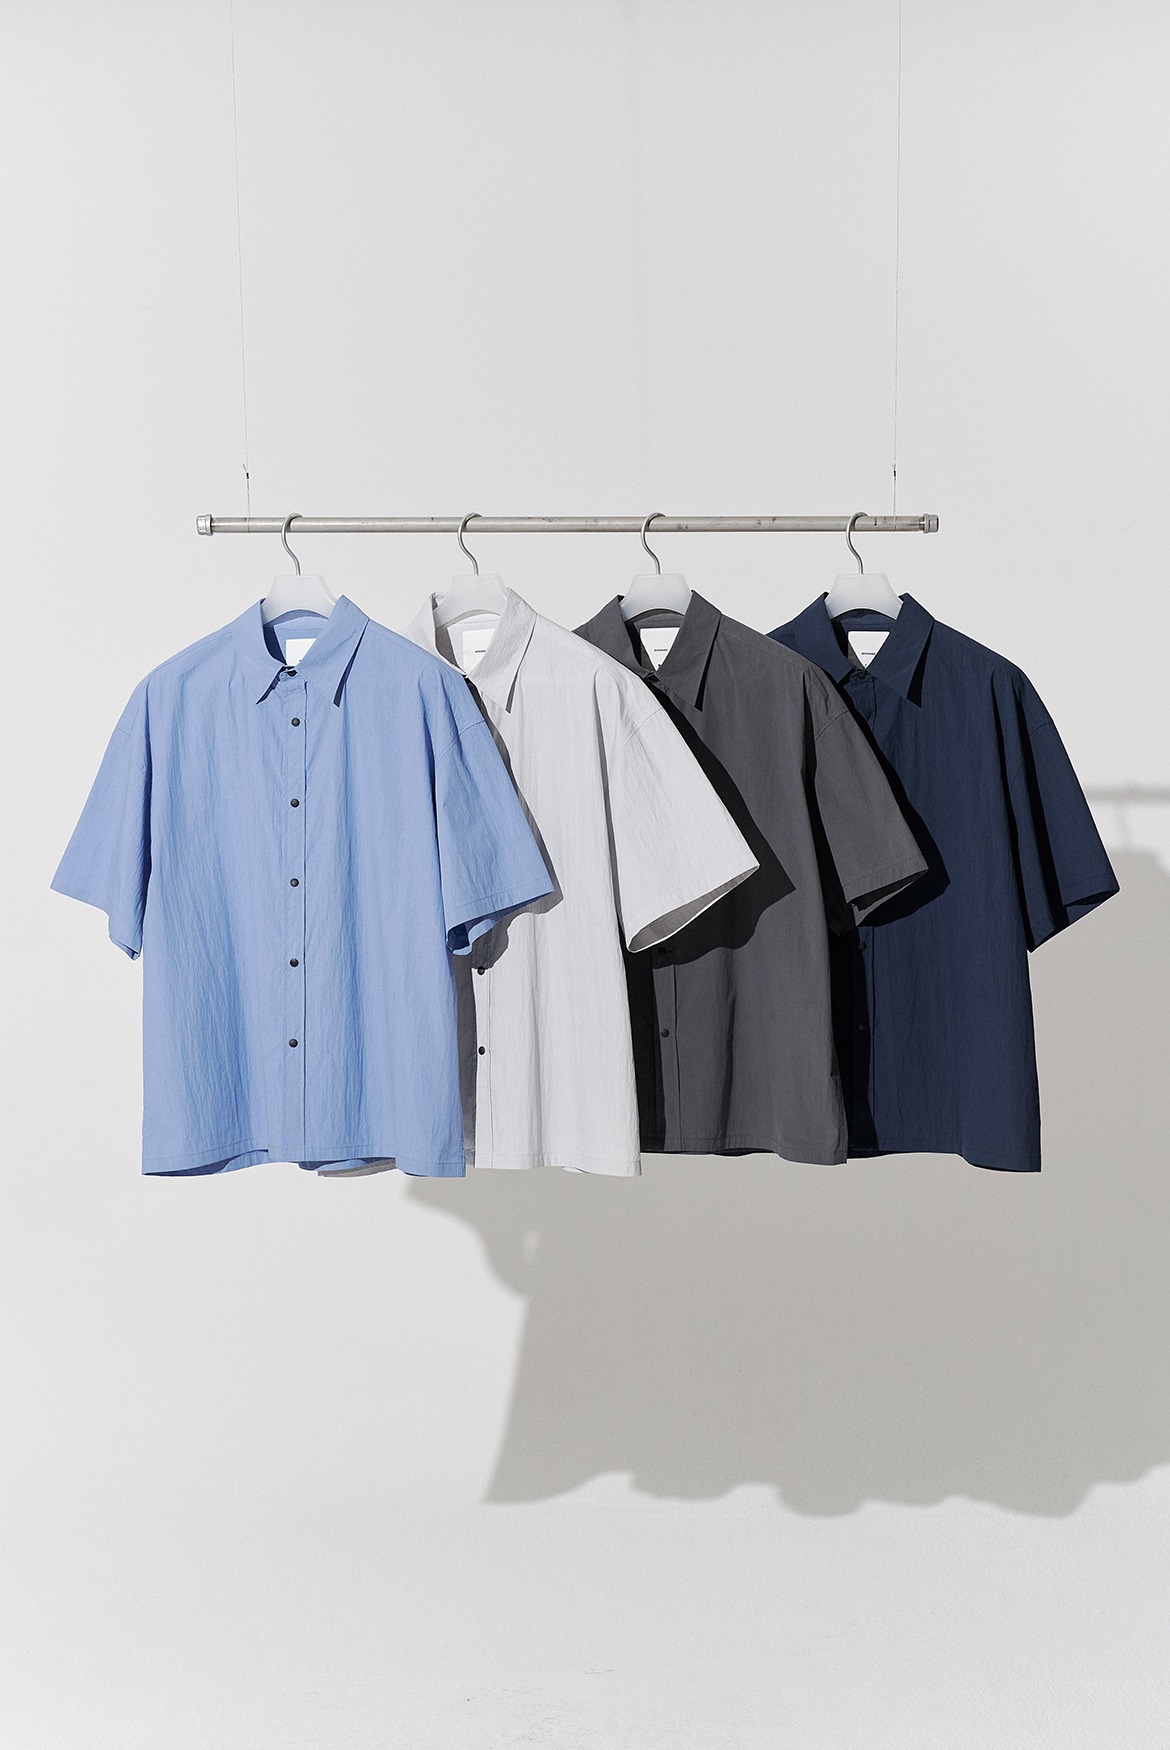 (6월 14일 Sax Blue, Light Grey, Charcoal M, L 예약 배송) Nylon Solid Shirts [4 Colors]